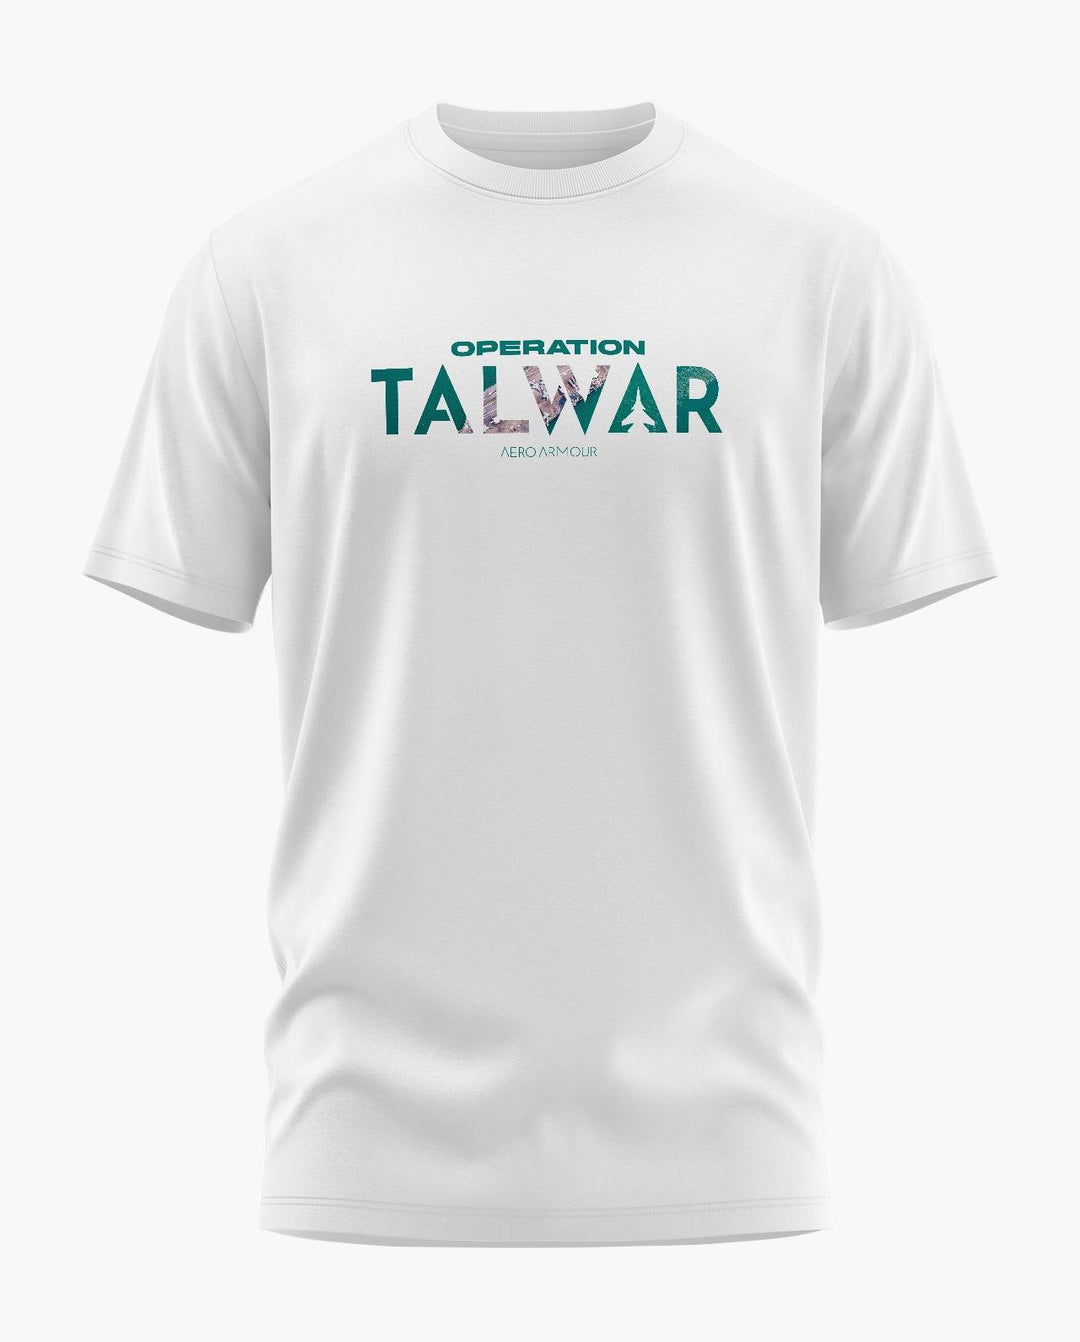 Operation Talwar T-Shirt - Aero Armour